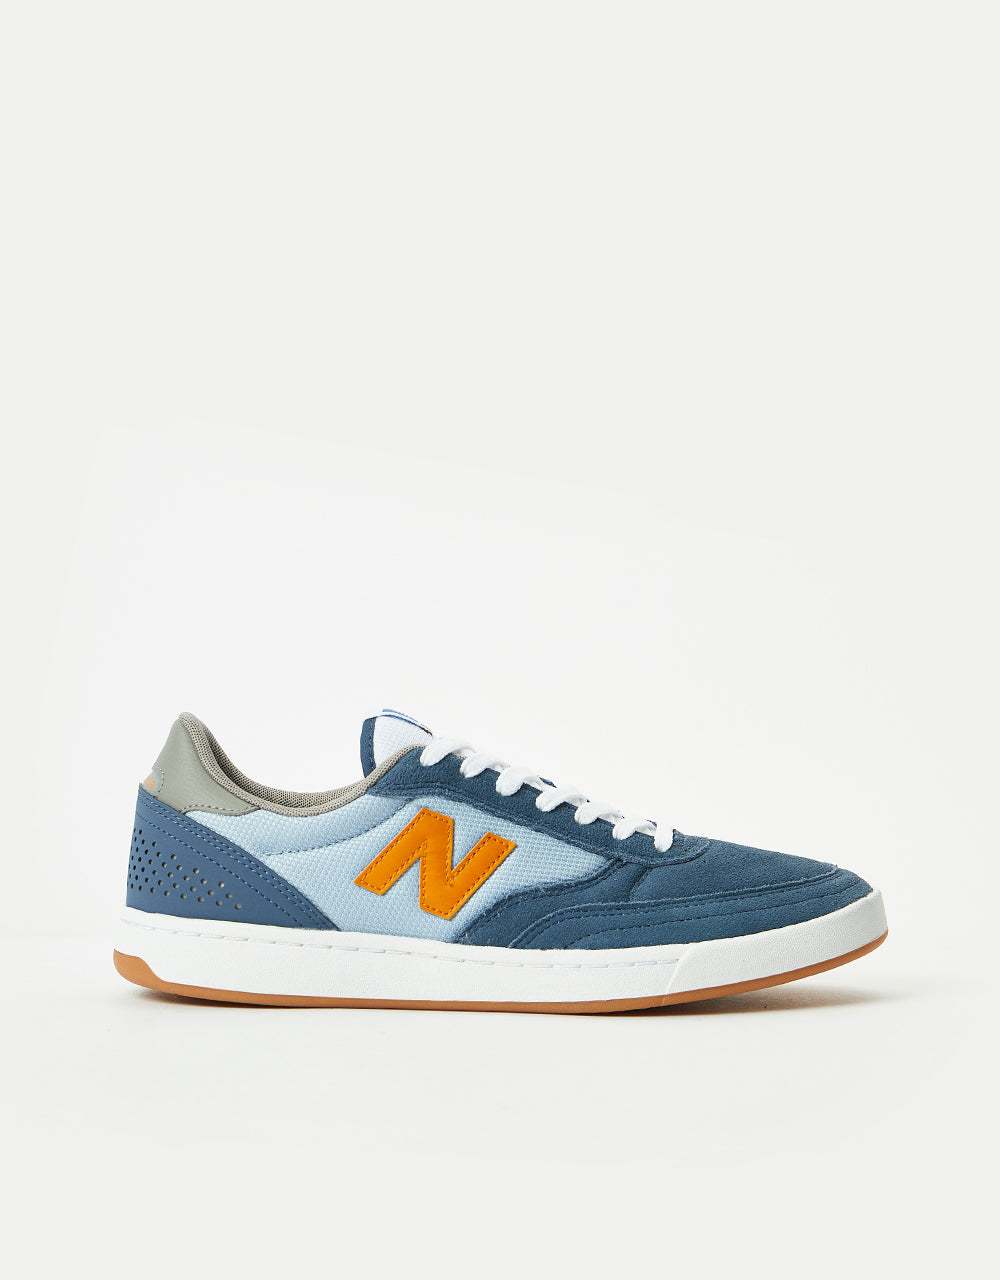 New Balance Numeric 440 Skate Shoes - Slate Blue/Orange